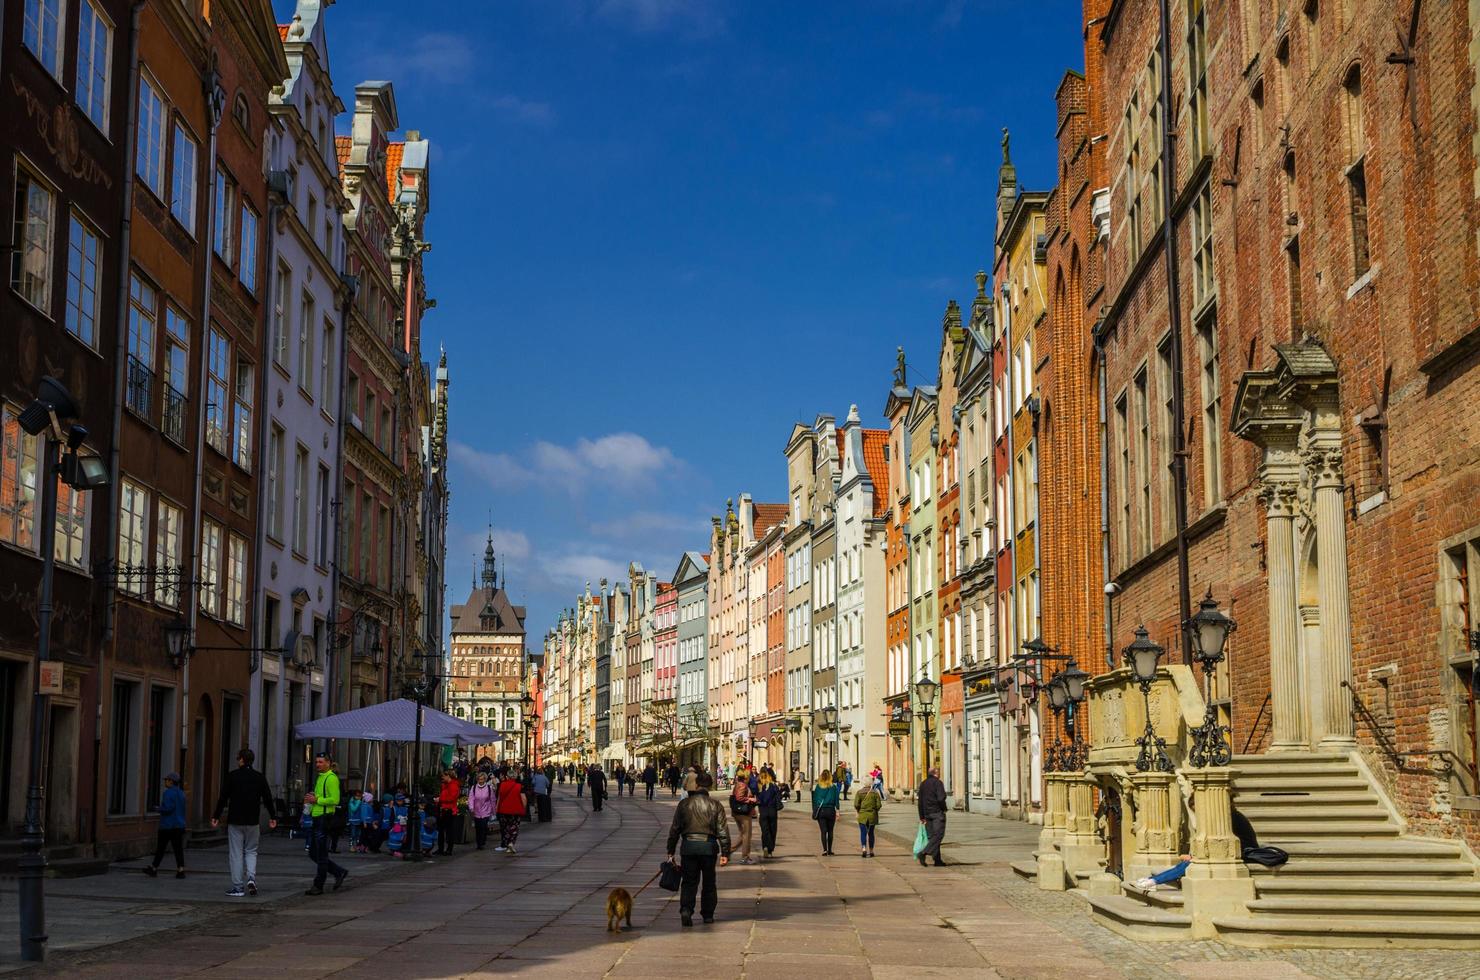 gdansk, polen, 17 april 2018 golden gate zlota brama, gevangenistoren en gevel van prachtige typische kleurrijke huizen, gebouwen en toeristen die op dluga-straat lopen in het oude historische stadscentrum foto